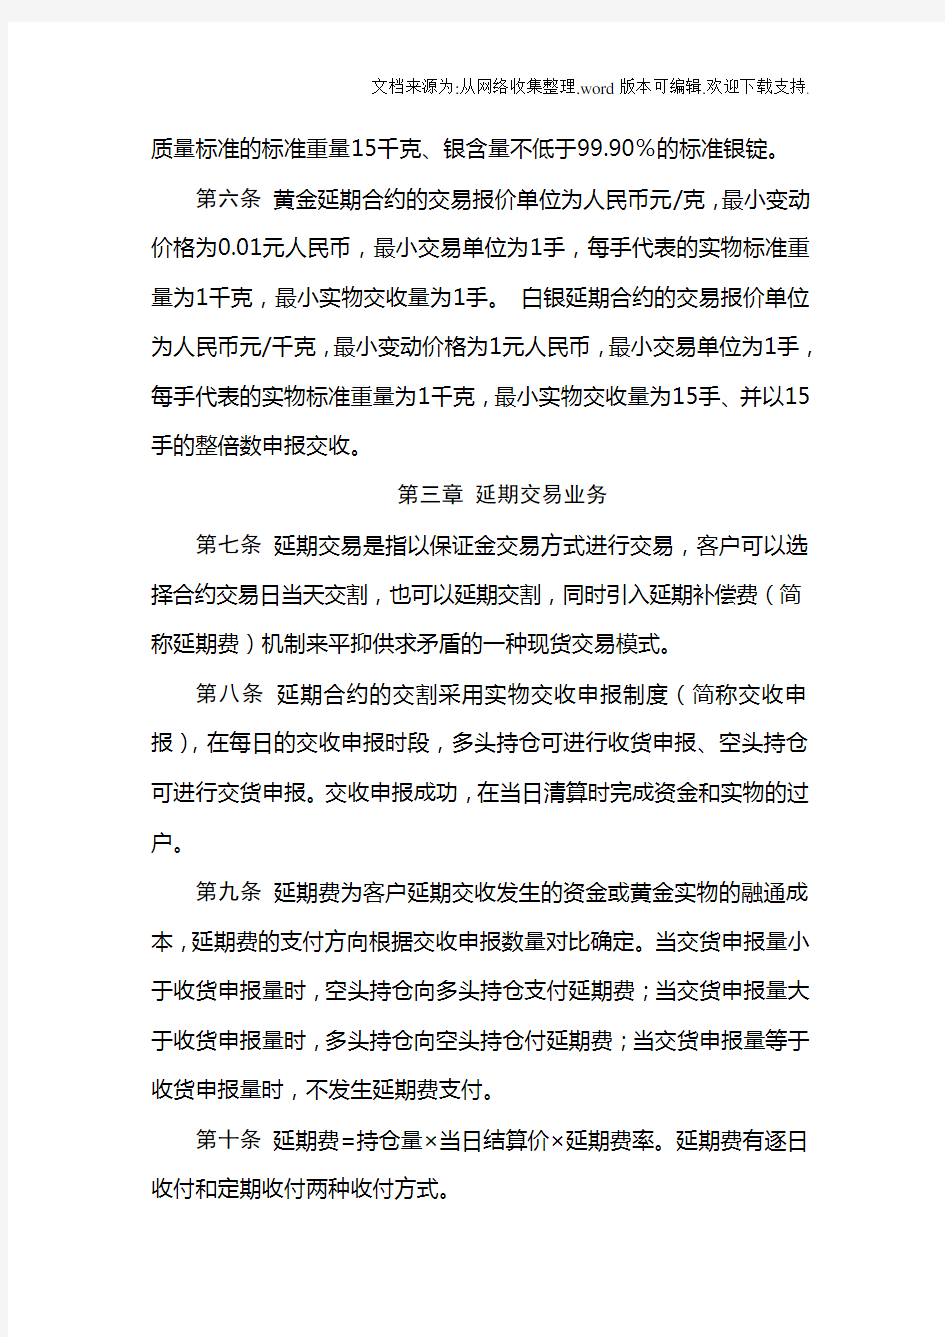 上海黄金交易所延期交收交易规则